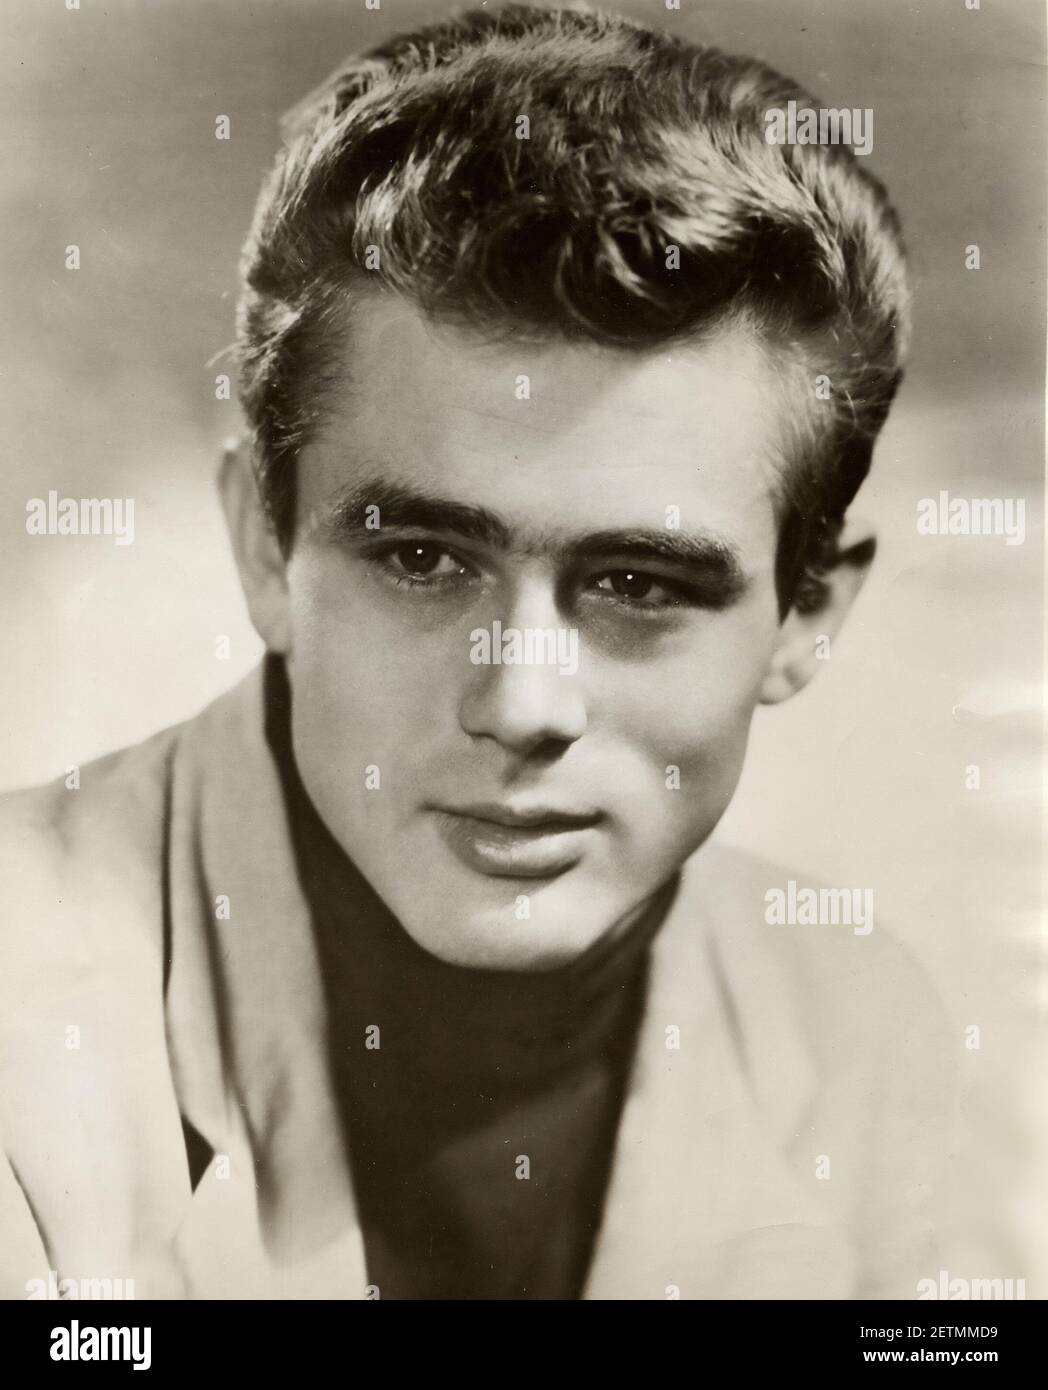 Ritratto di James Dean, star del cinema, foto d'epoca Foto Stock